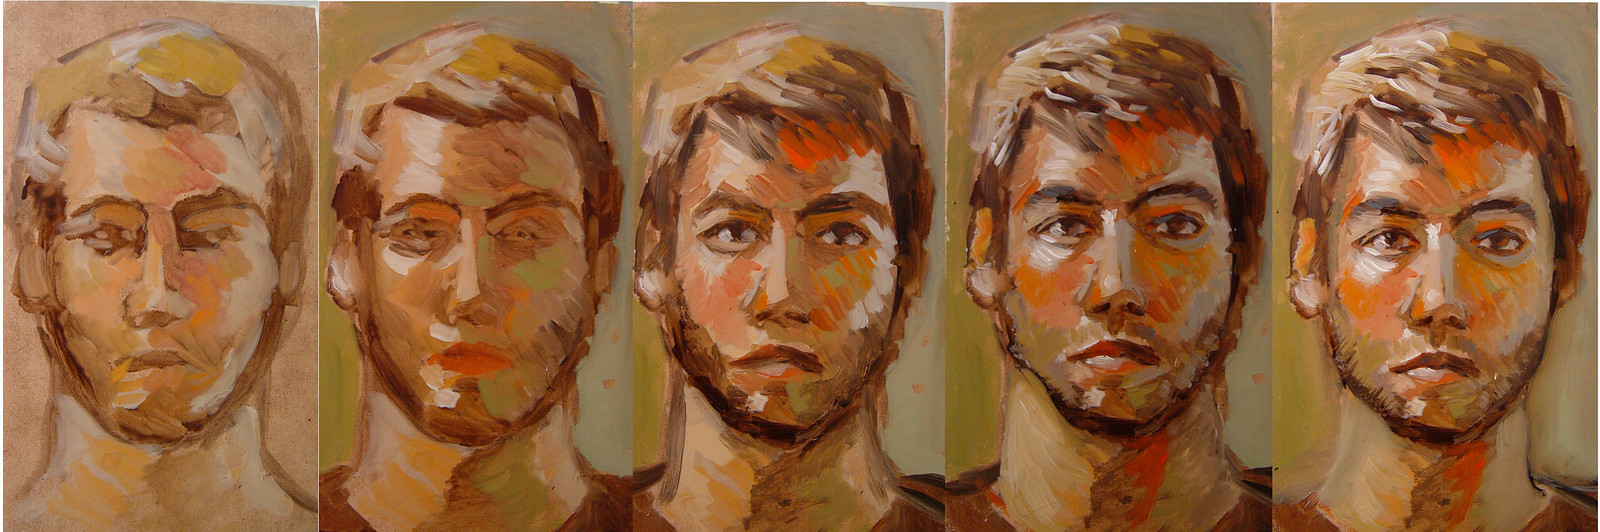 Portrait process 1